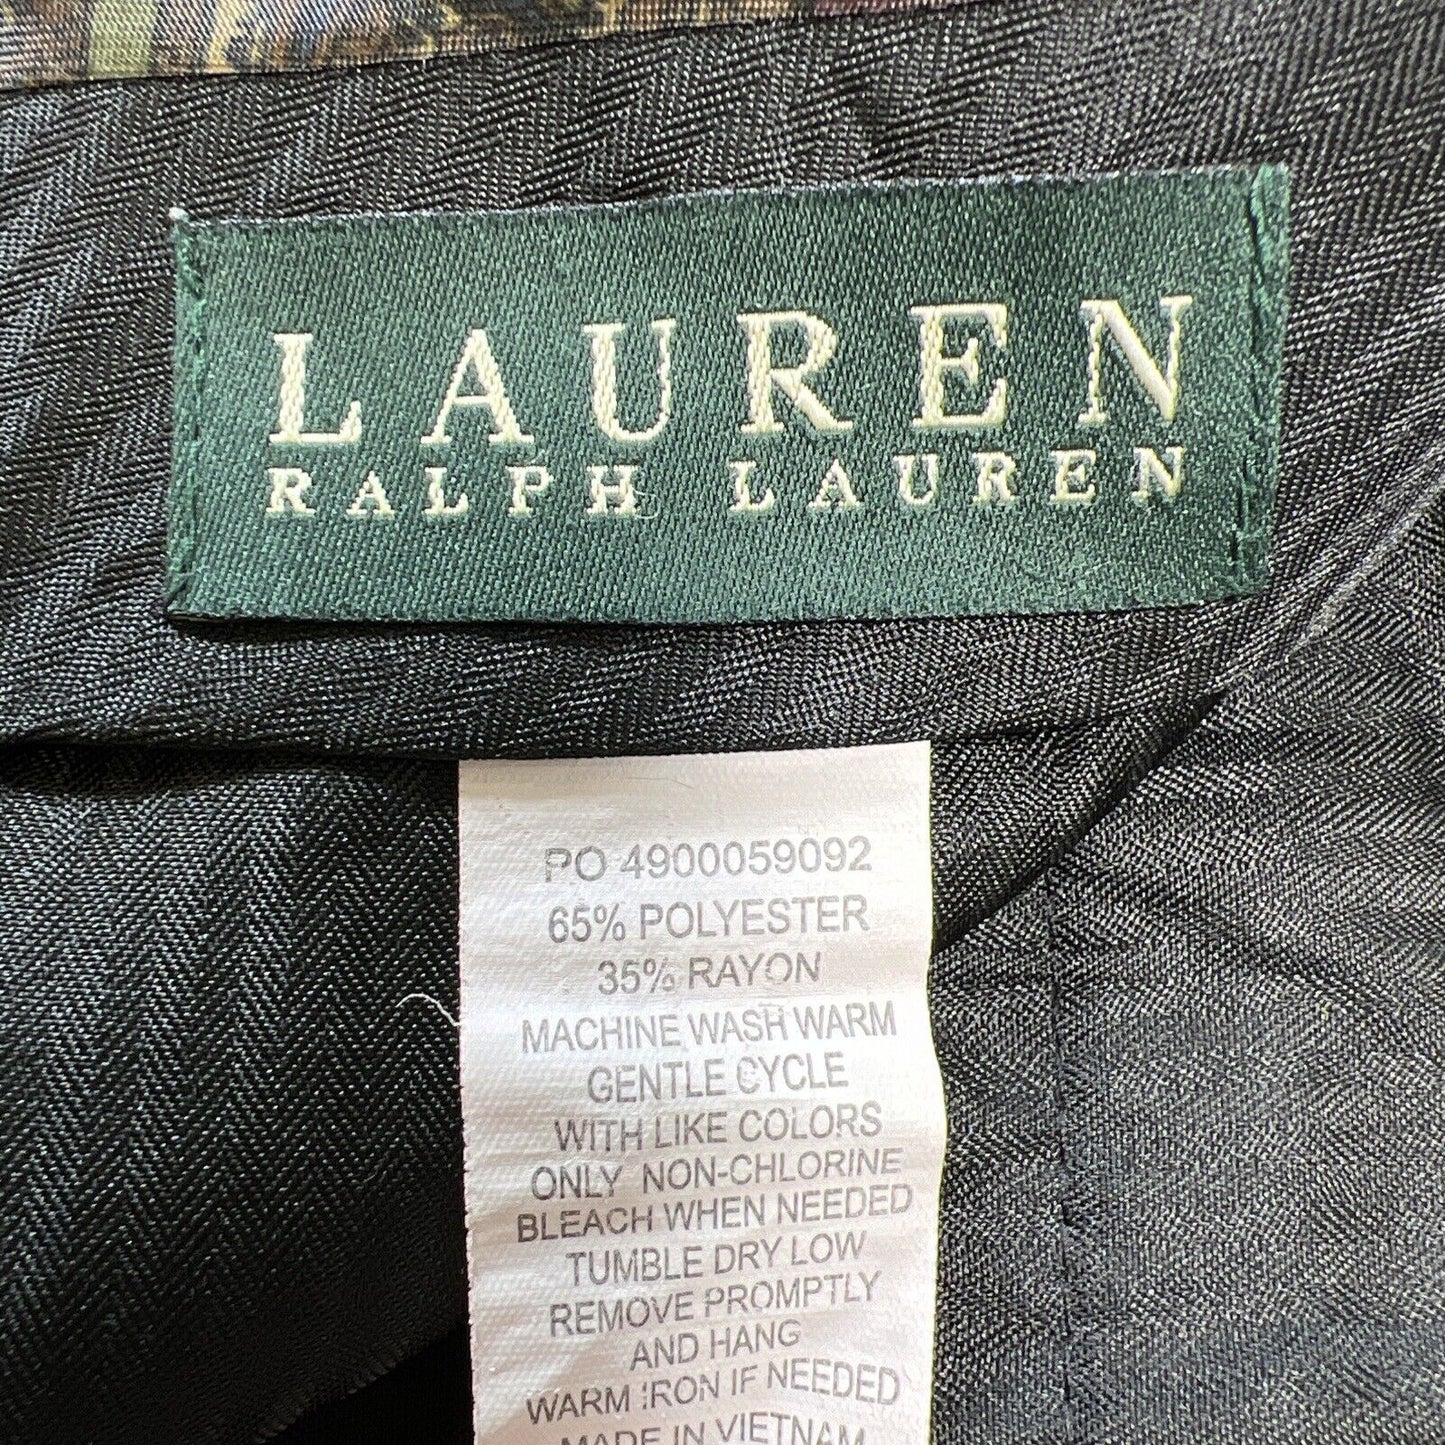 Lauren Ralph Lauren Pantalones de vestir negros para hombre - 36X30